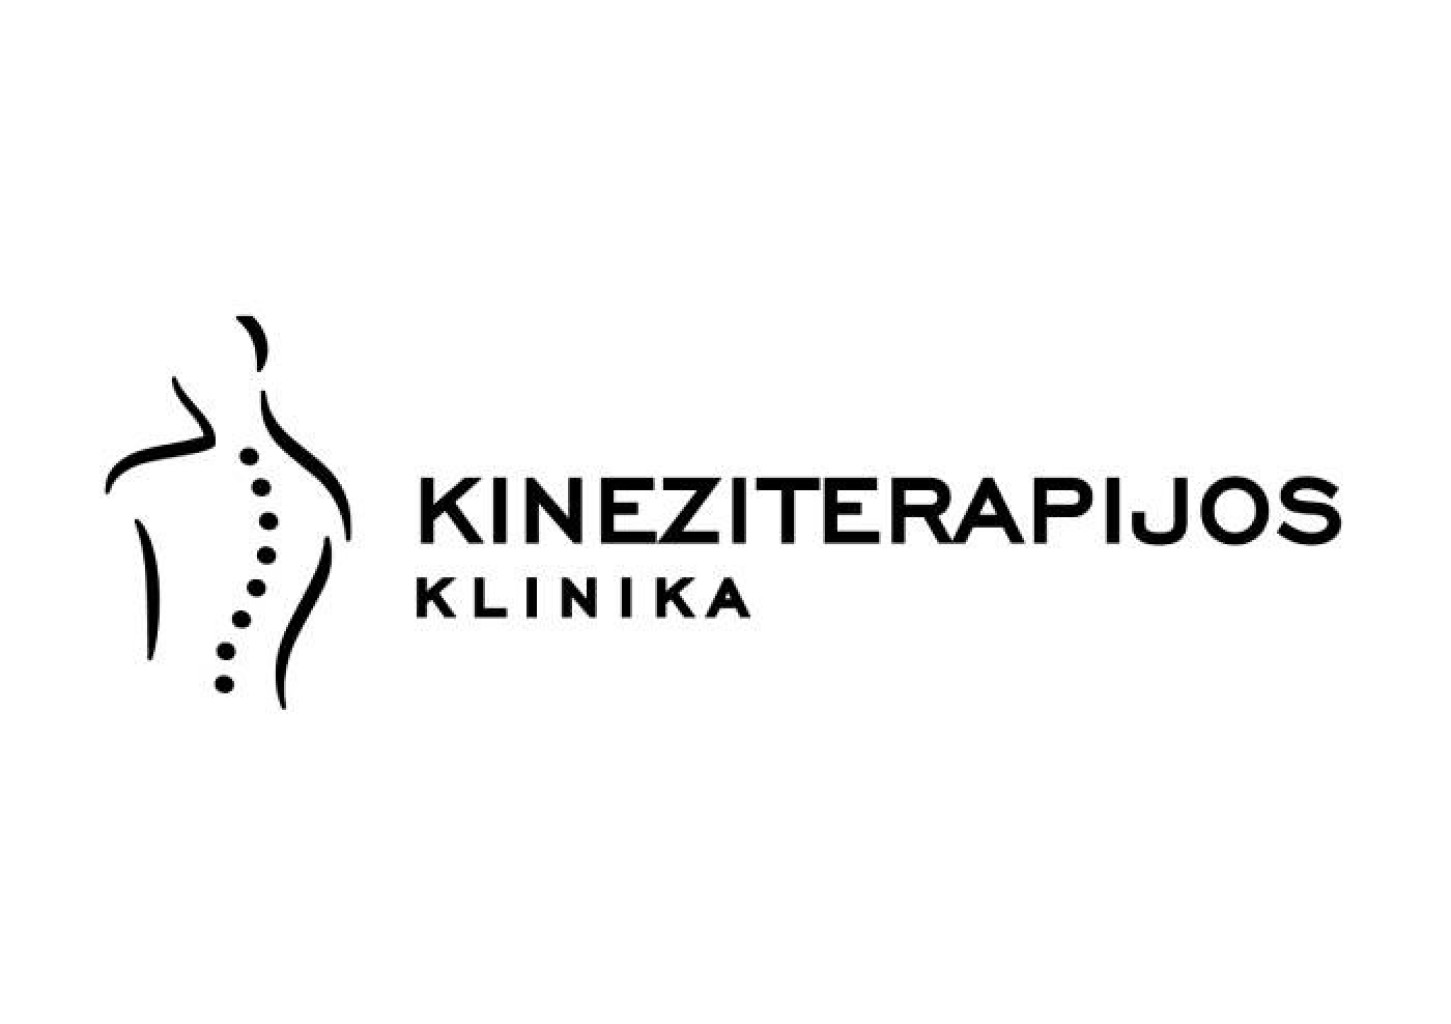 Pirminė kineziterapeuto konsultacija – funkcinis ištyrimas ir gydymas